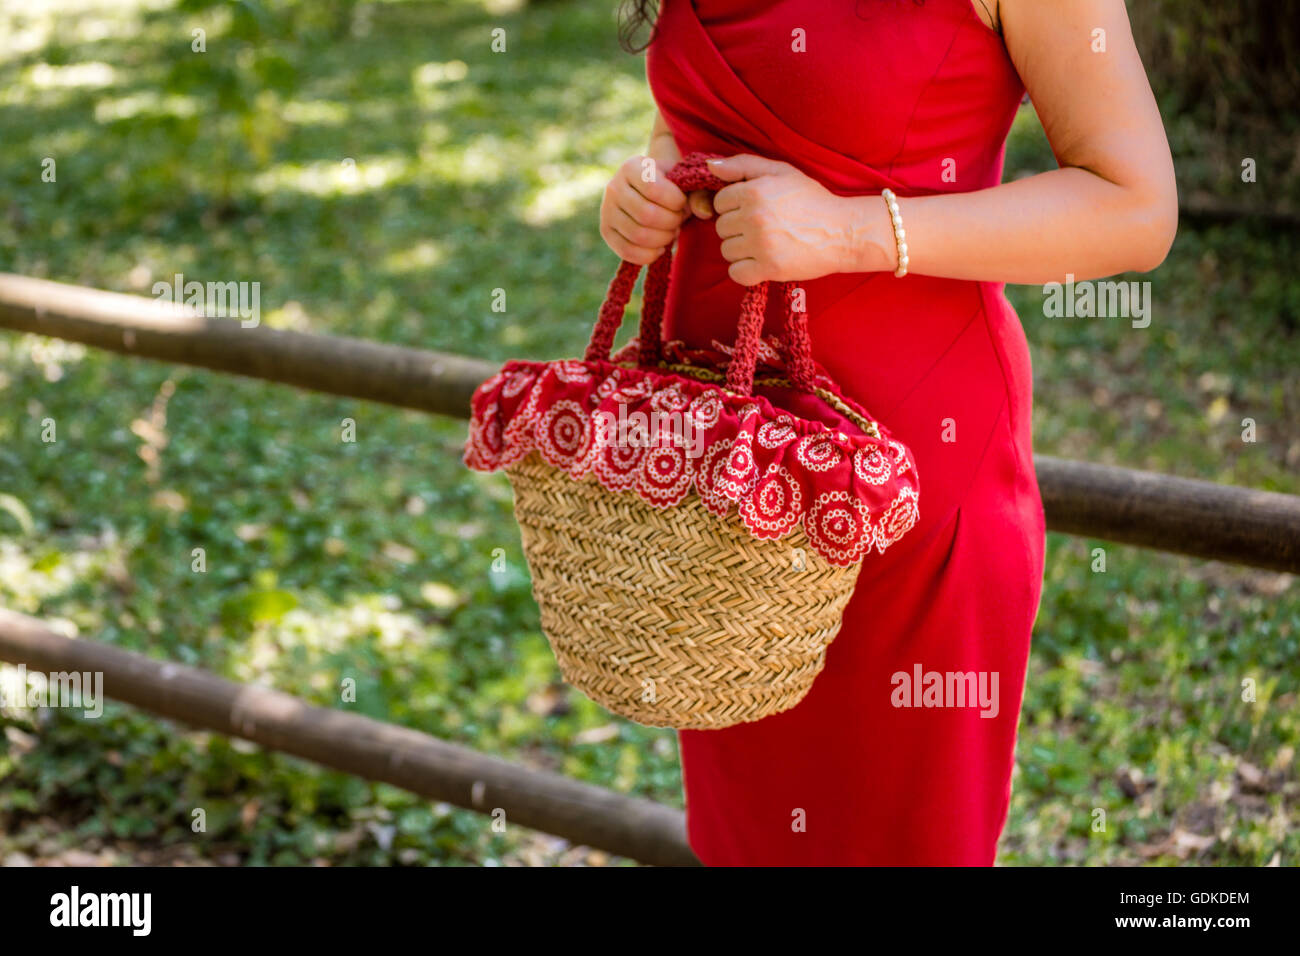 weibliche Hände halten eine Tasche im Landhausstil hergestellt aus Bast und rotes Tuch mit weißen Blüten, wartet die Frau, gekleidet in einen roten Etuikleid nervös in einem park Stockfoto